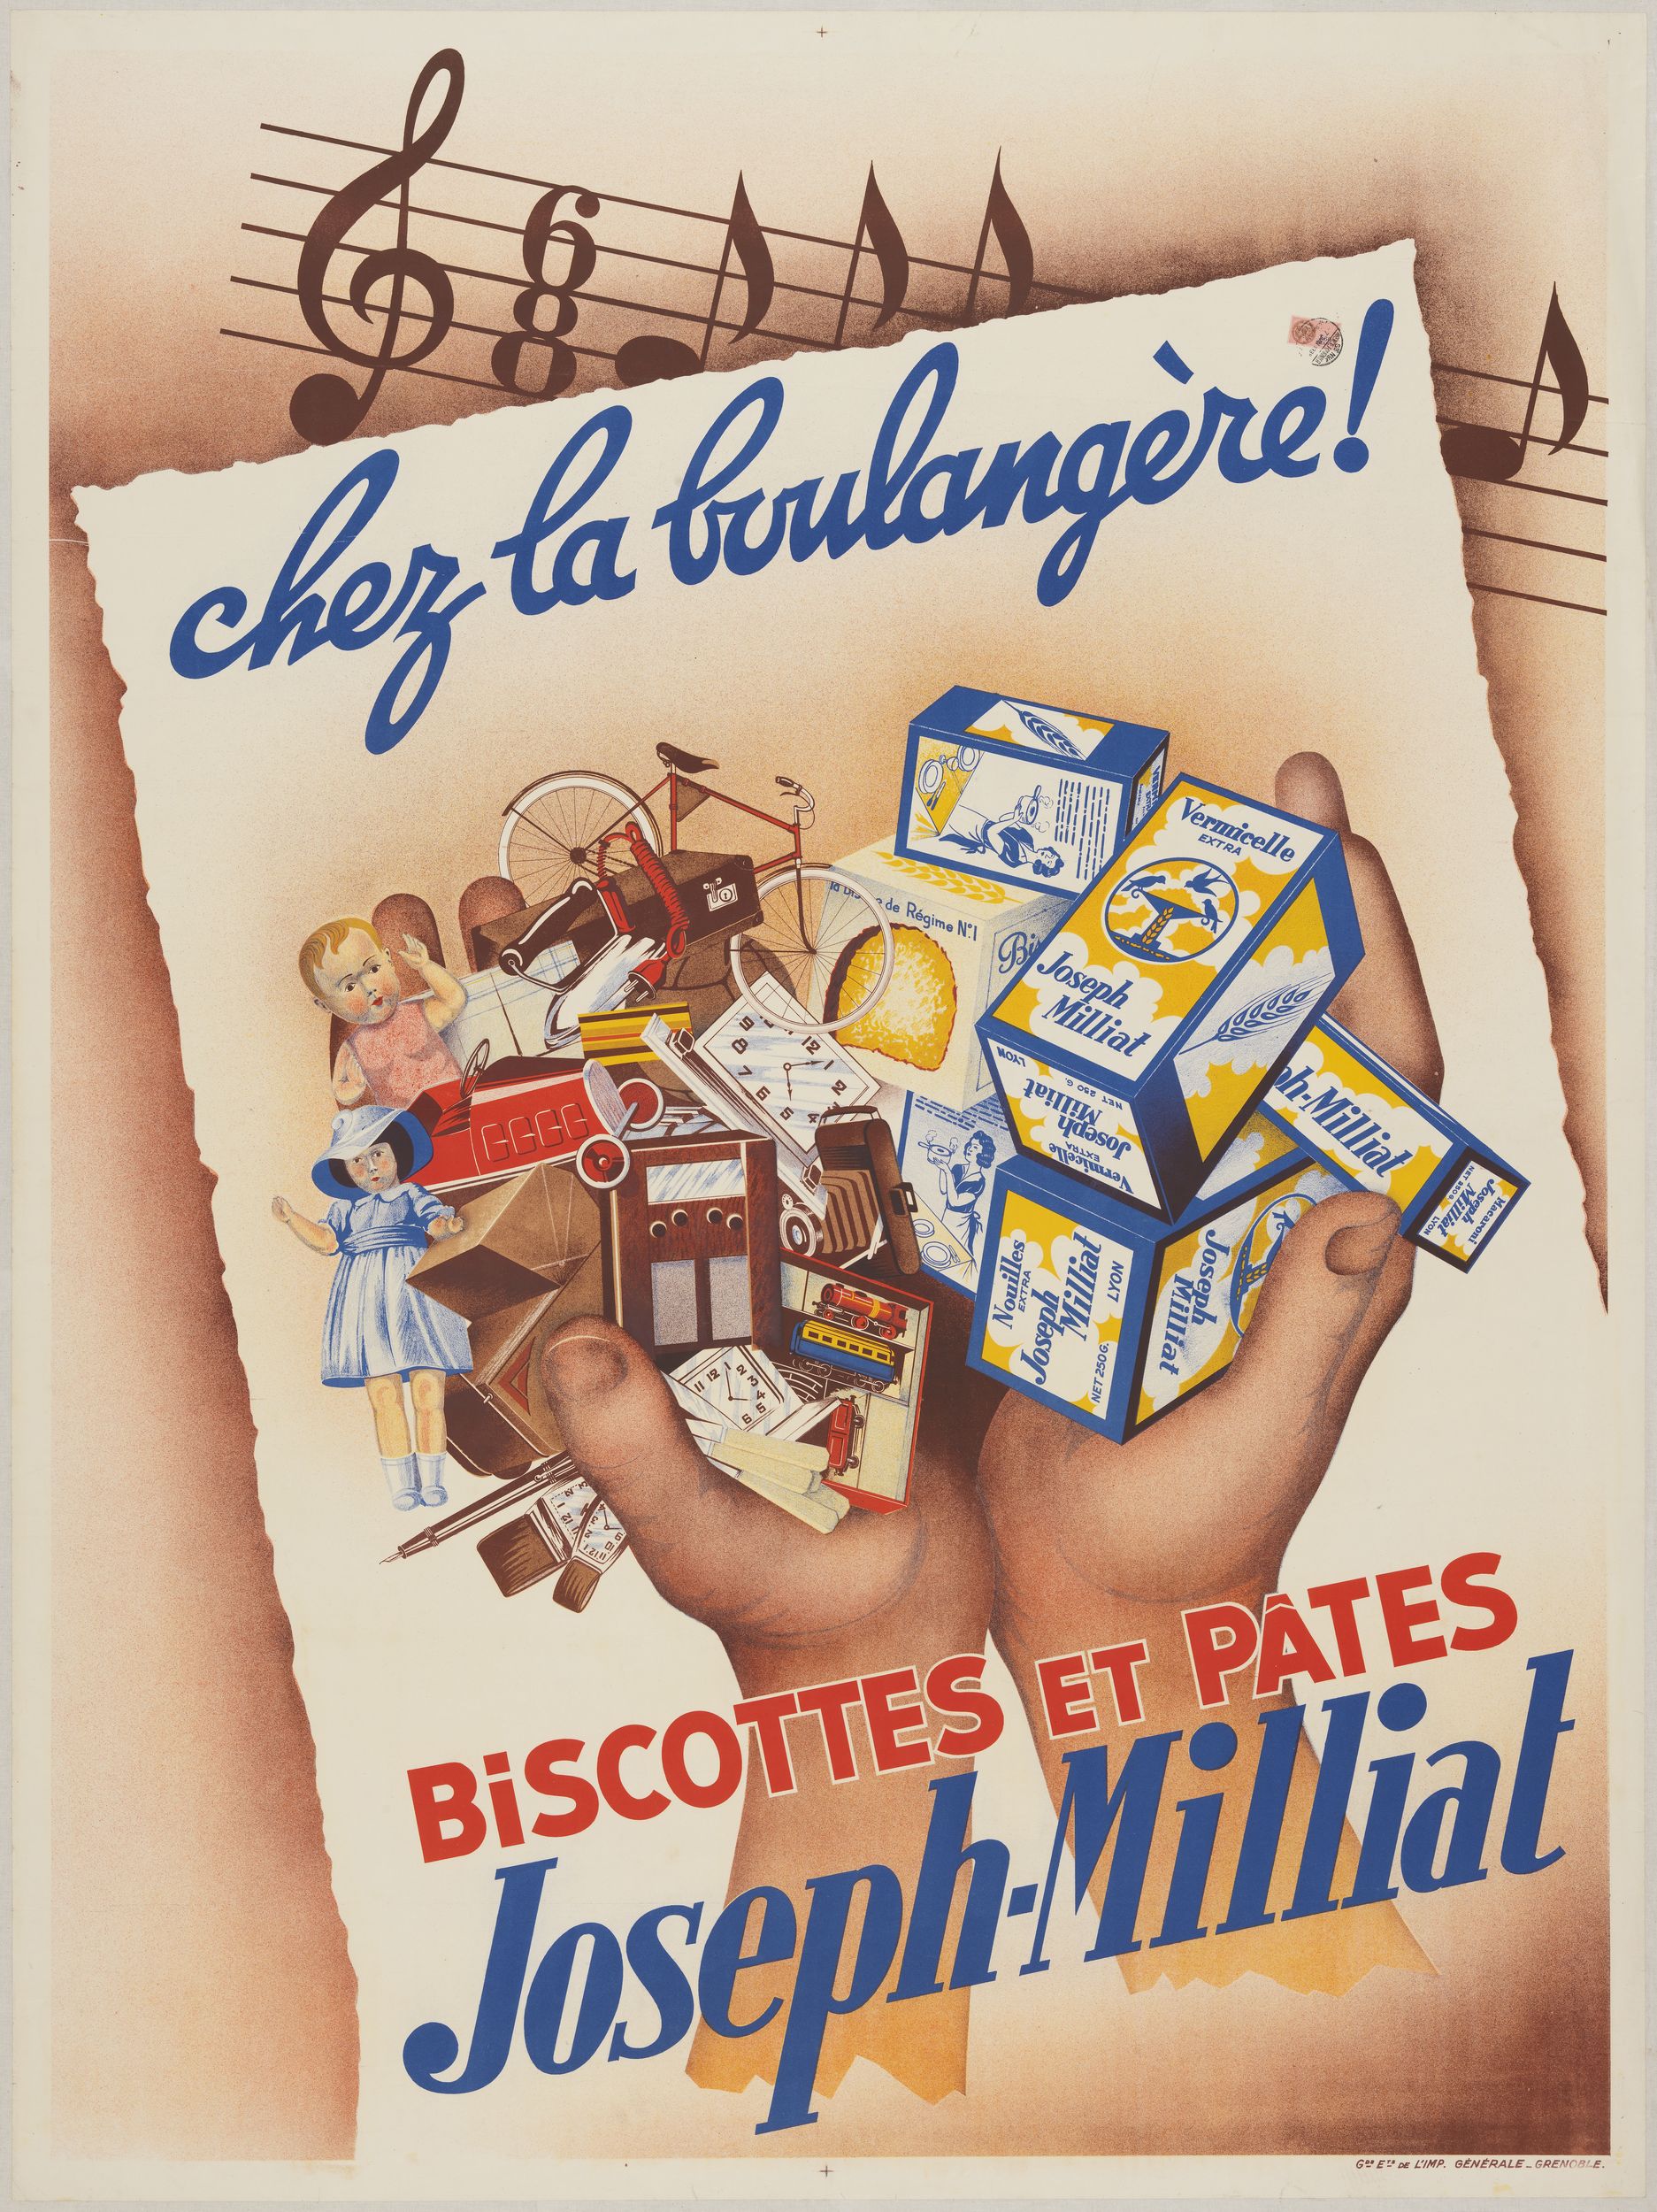 Chez la boulangère ! Biscottes et pâtes Joseph-Milliat : affiche publicitaire couleur très grand format (1938, cote : 7FI/2454)